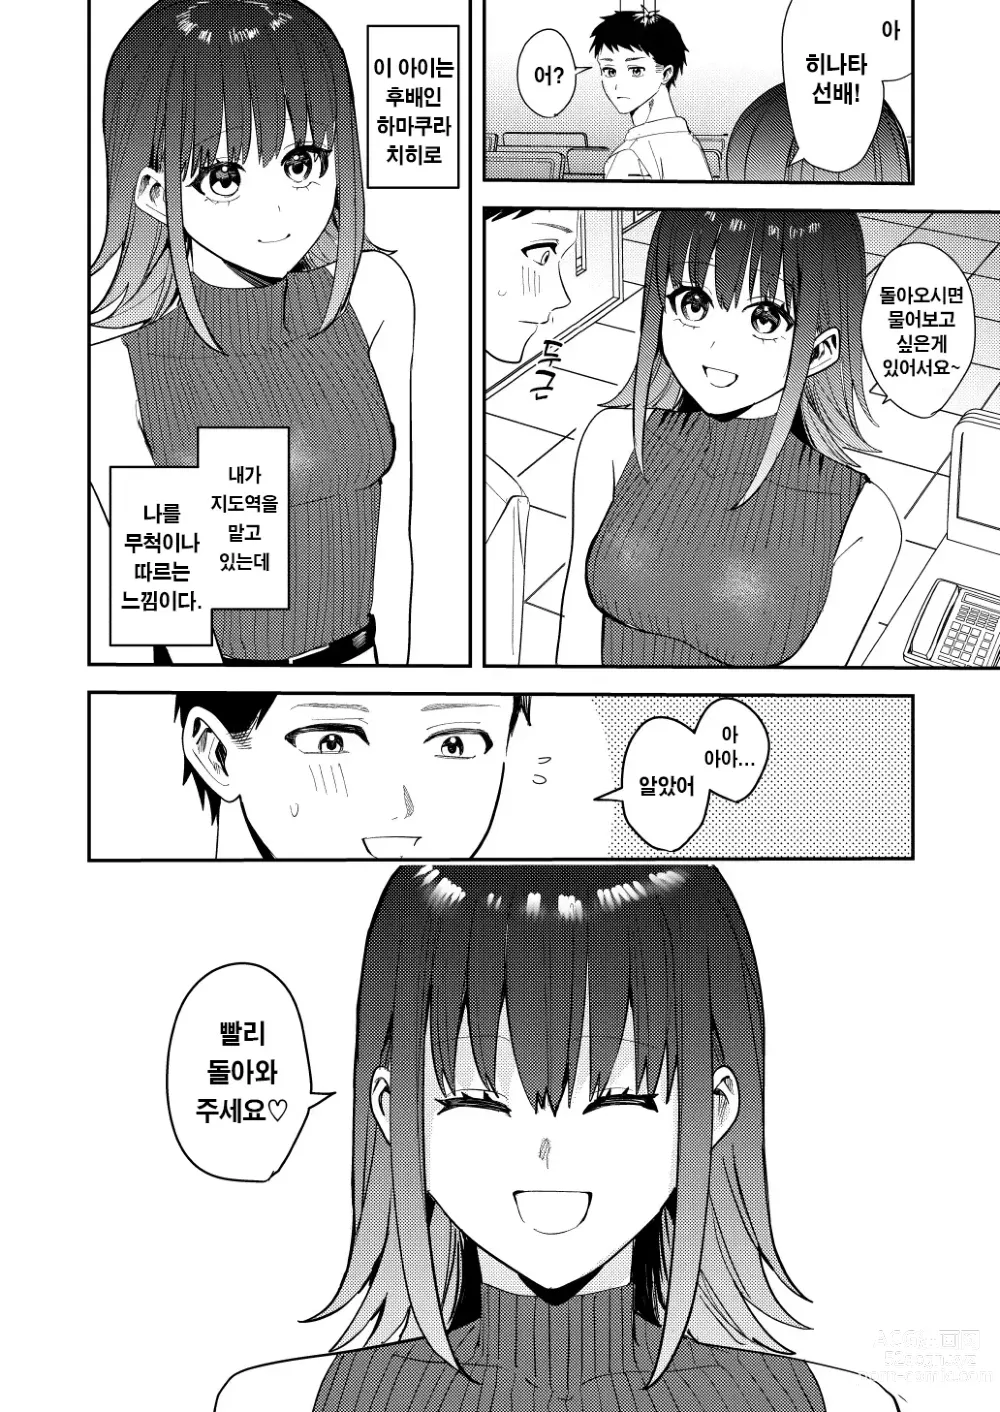 Page 2 of doujinshi 나는 거울의 나라에서 여자로 바뀐다 ~성별 반전 세계에서 여자의 쾌감을 탐하는 이야기~